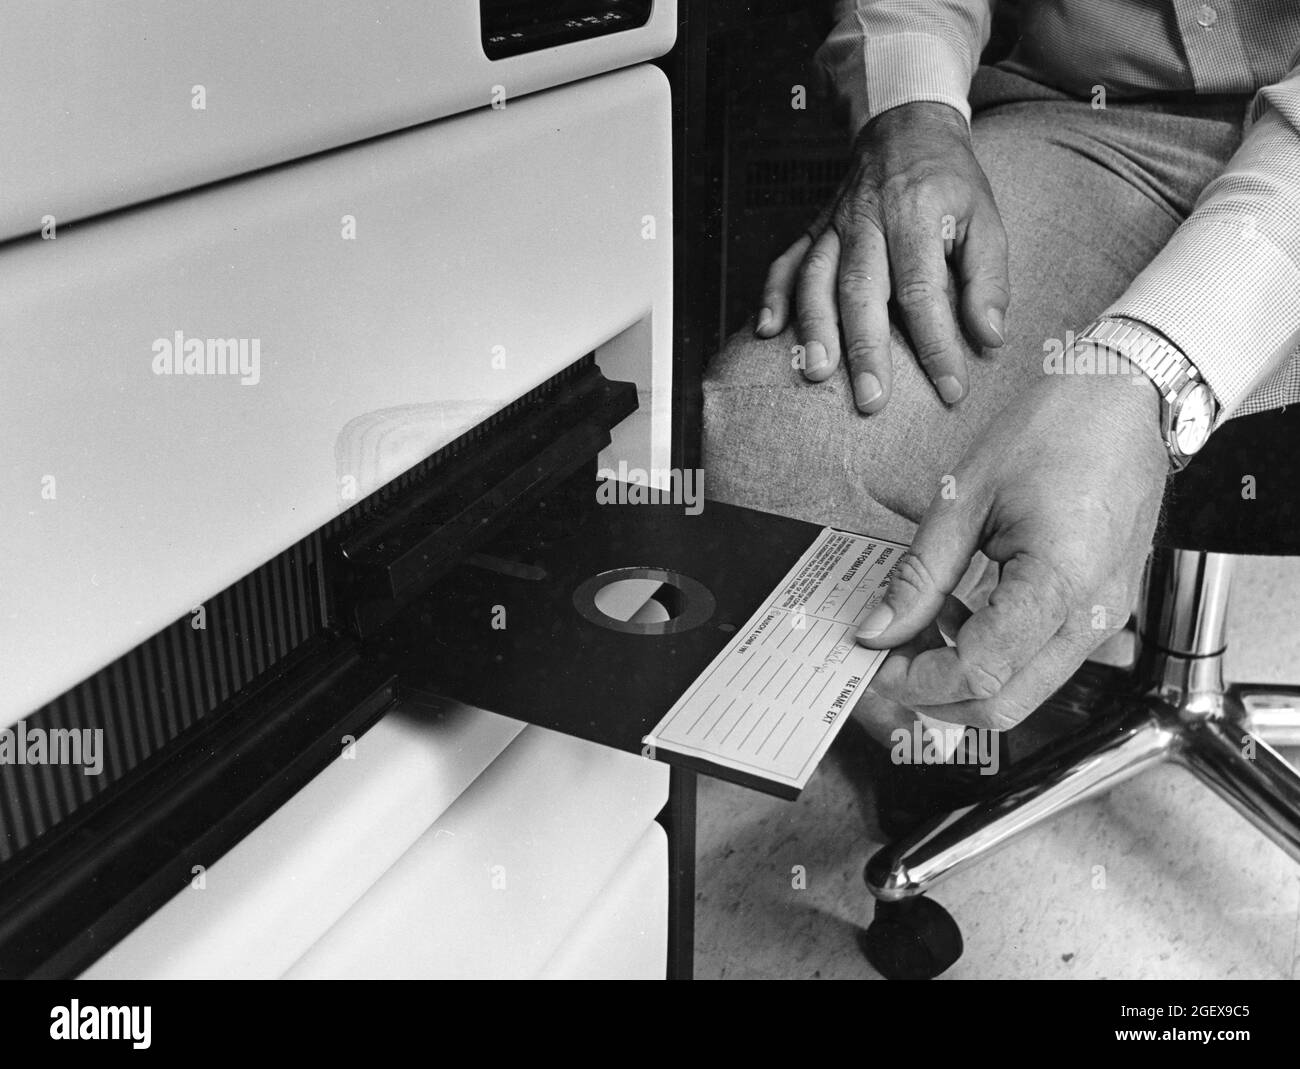 Programme informatique Banque d'images noir et blanc - Alamy